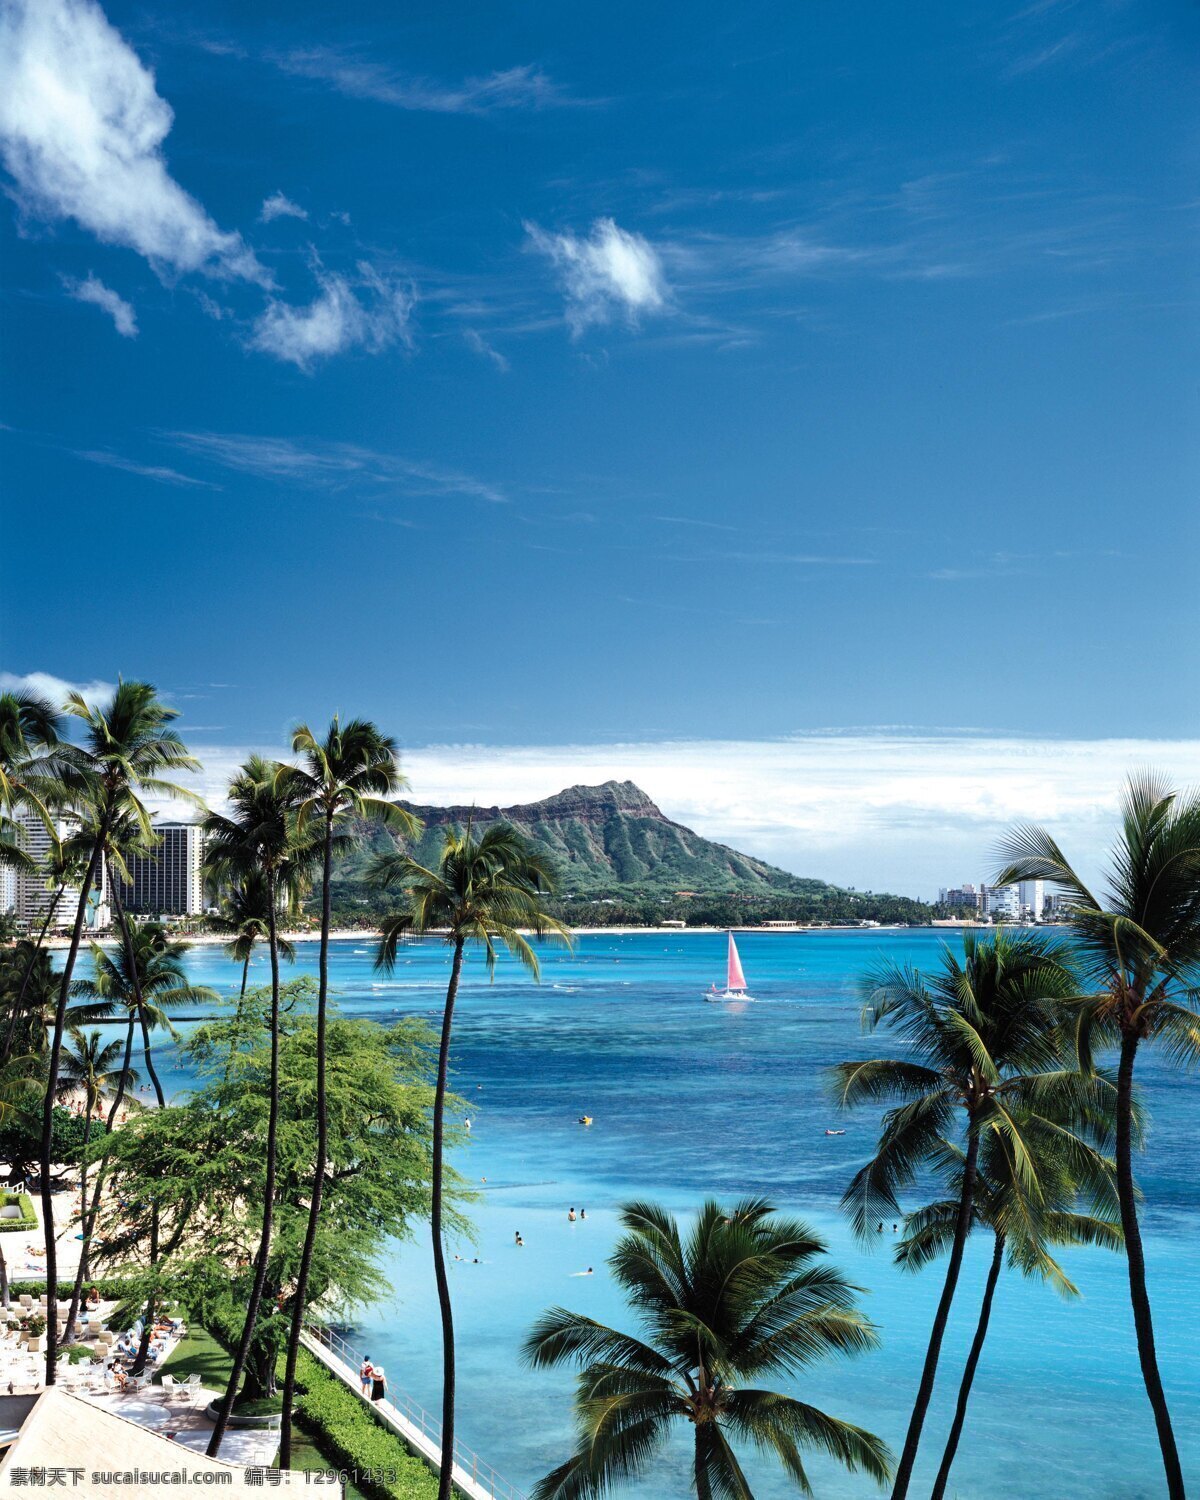 夏威夷关岛 天空 白云 沙滩 椰子树 楼房 人帆船 自然景观 自然风景 夏威夷 关岛 摄影图库